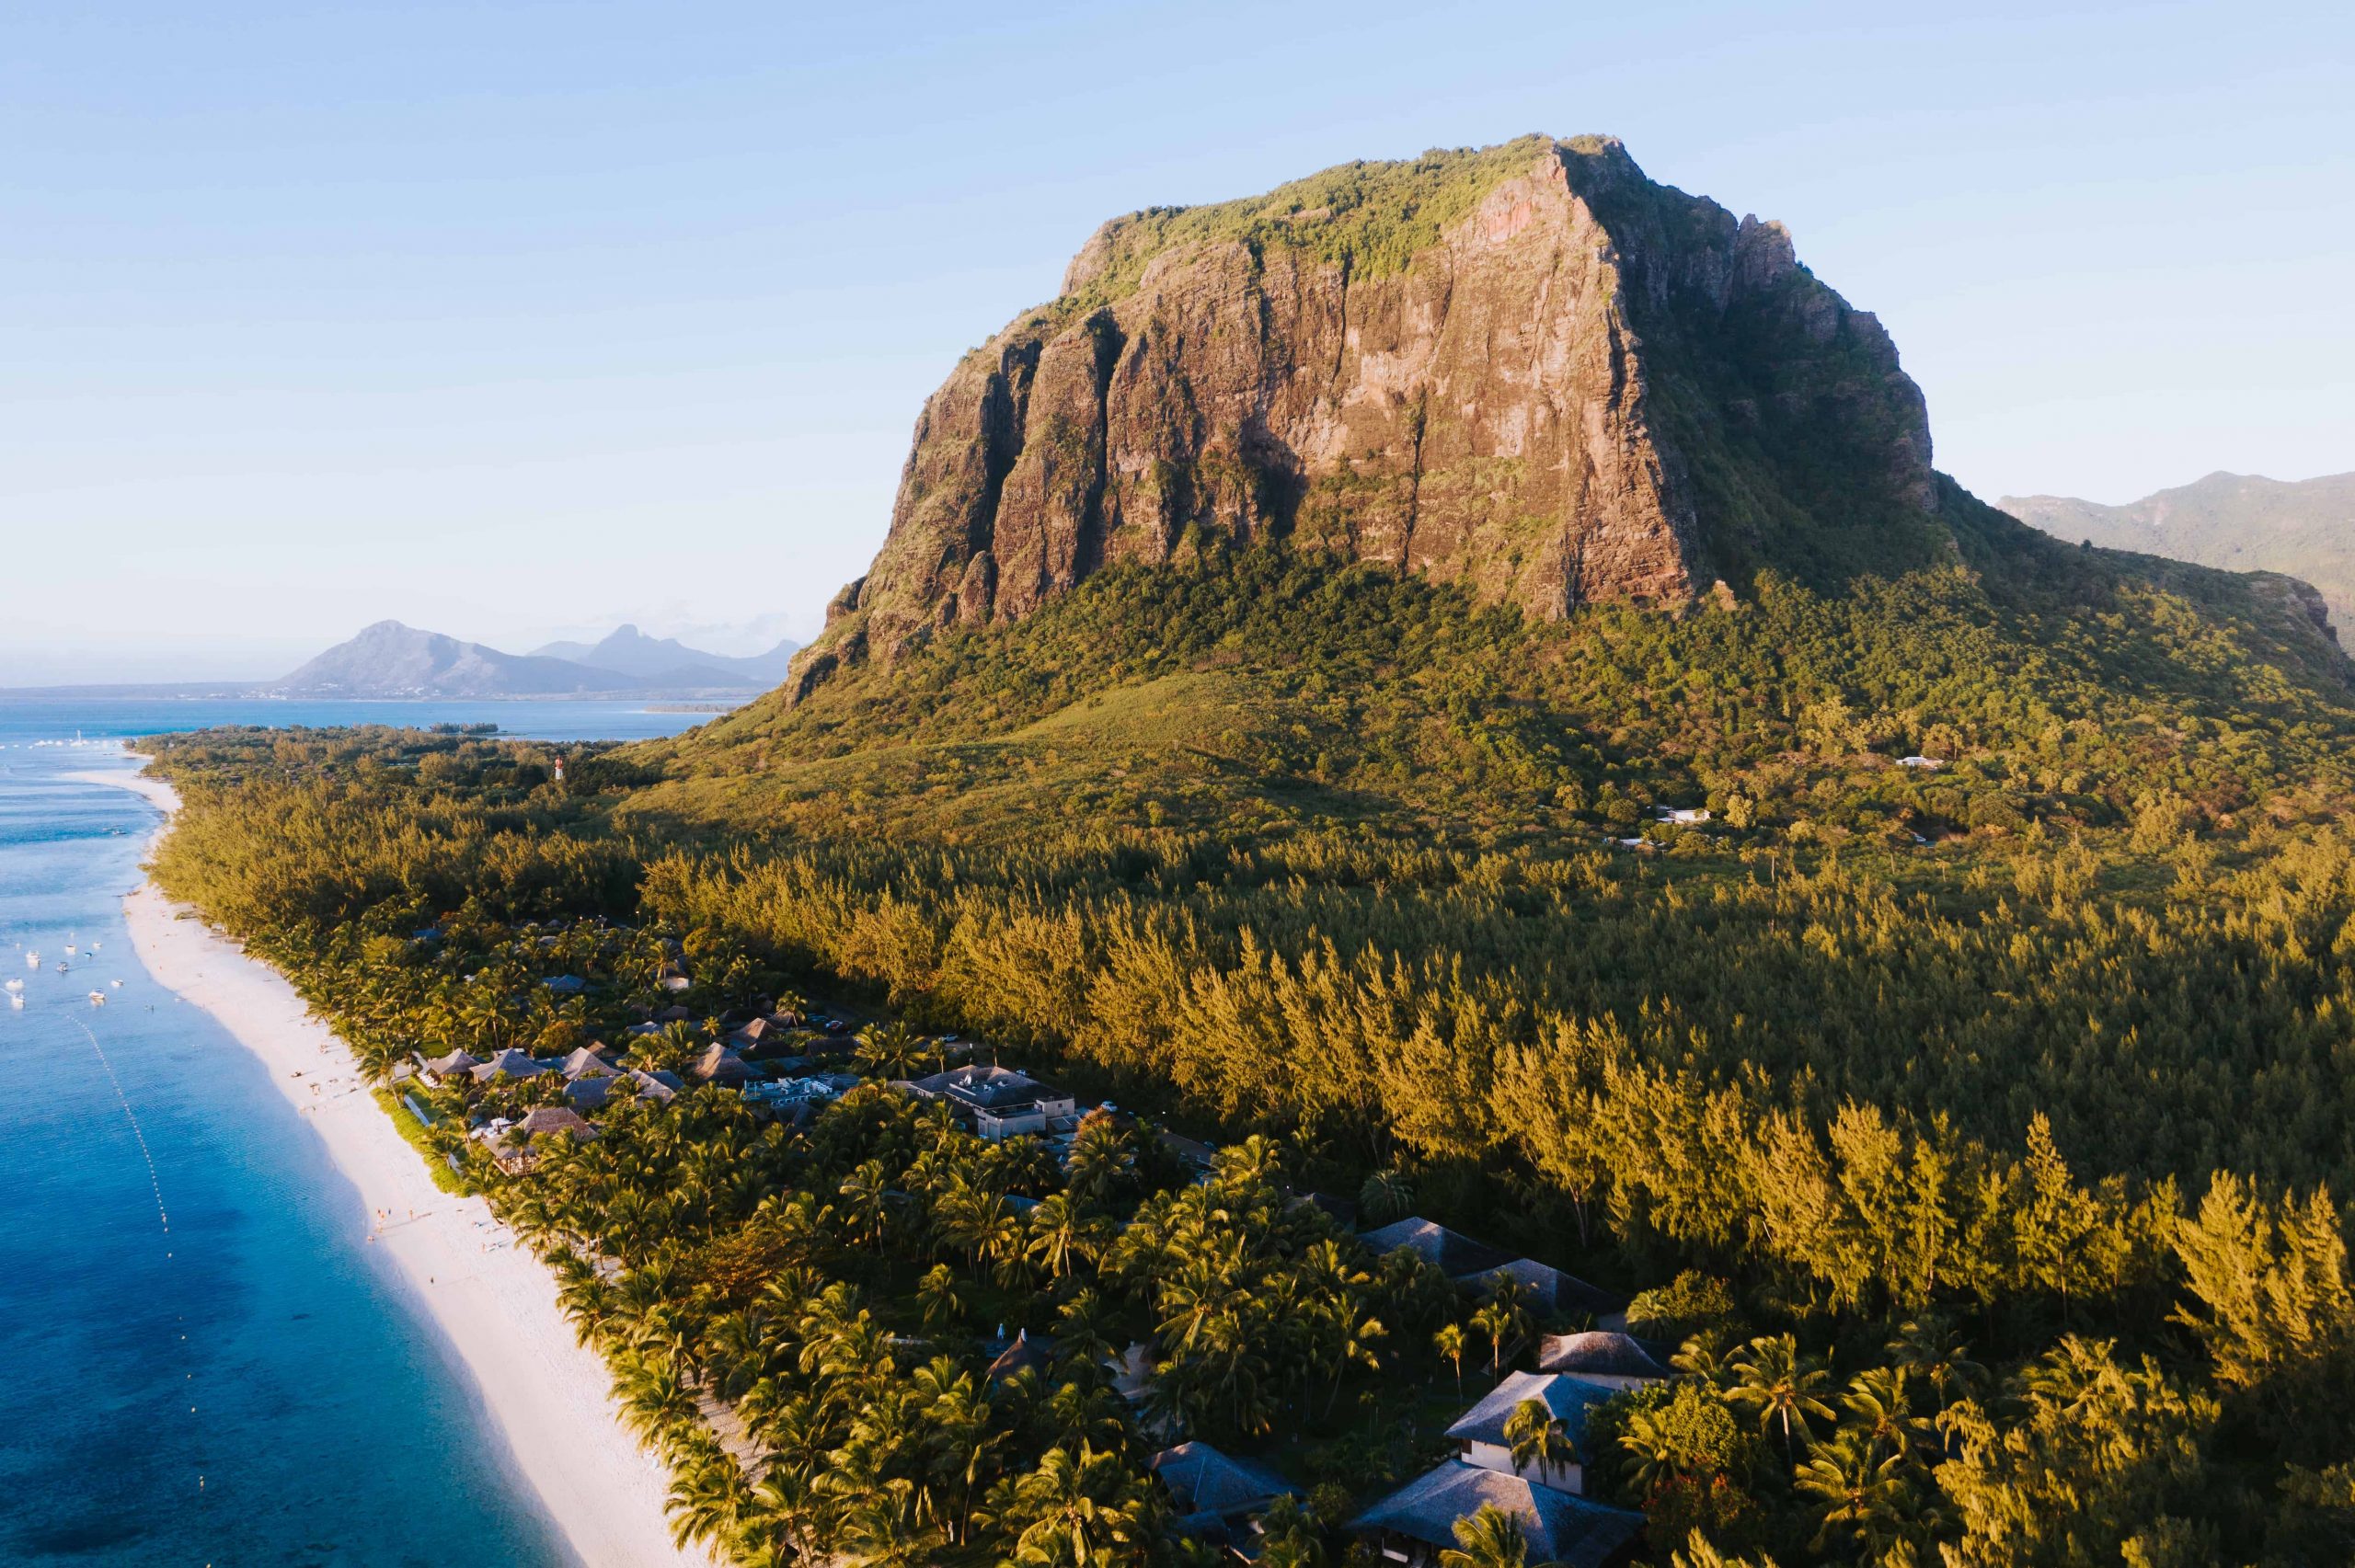 Scenic shot of Mauritius